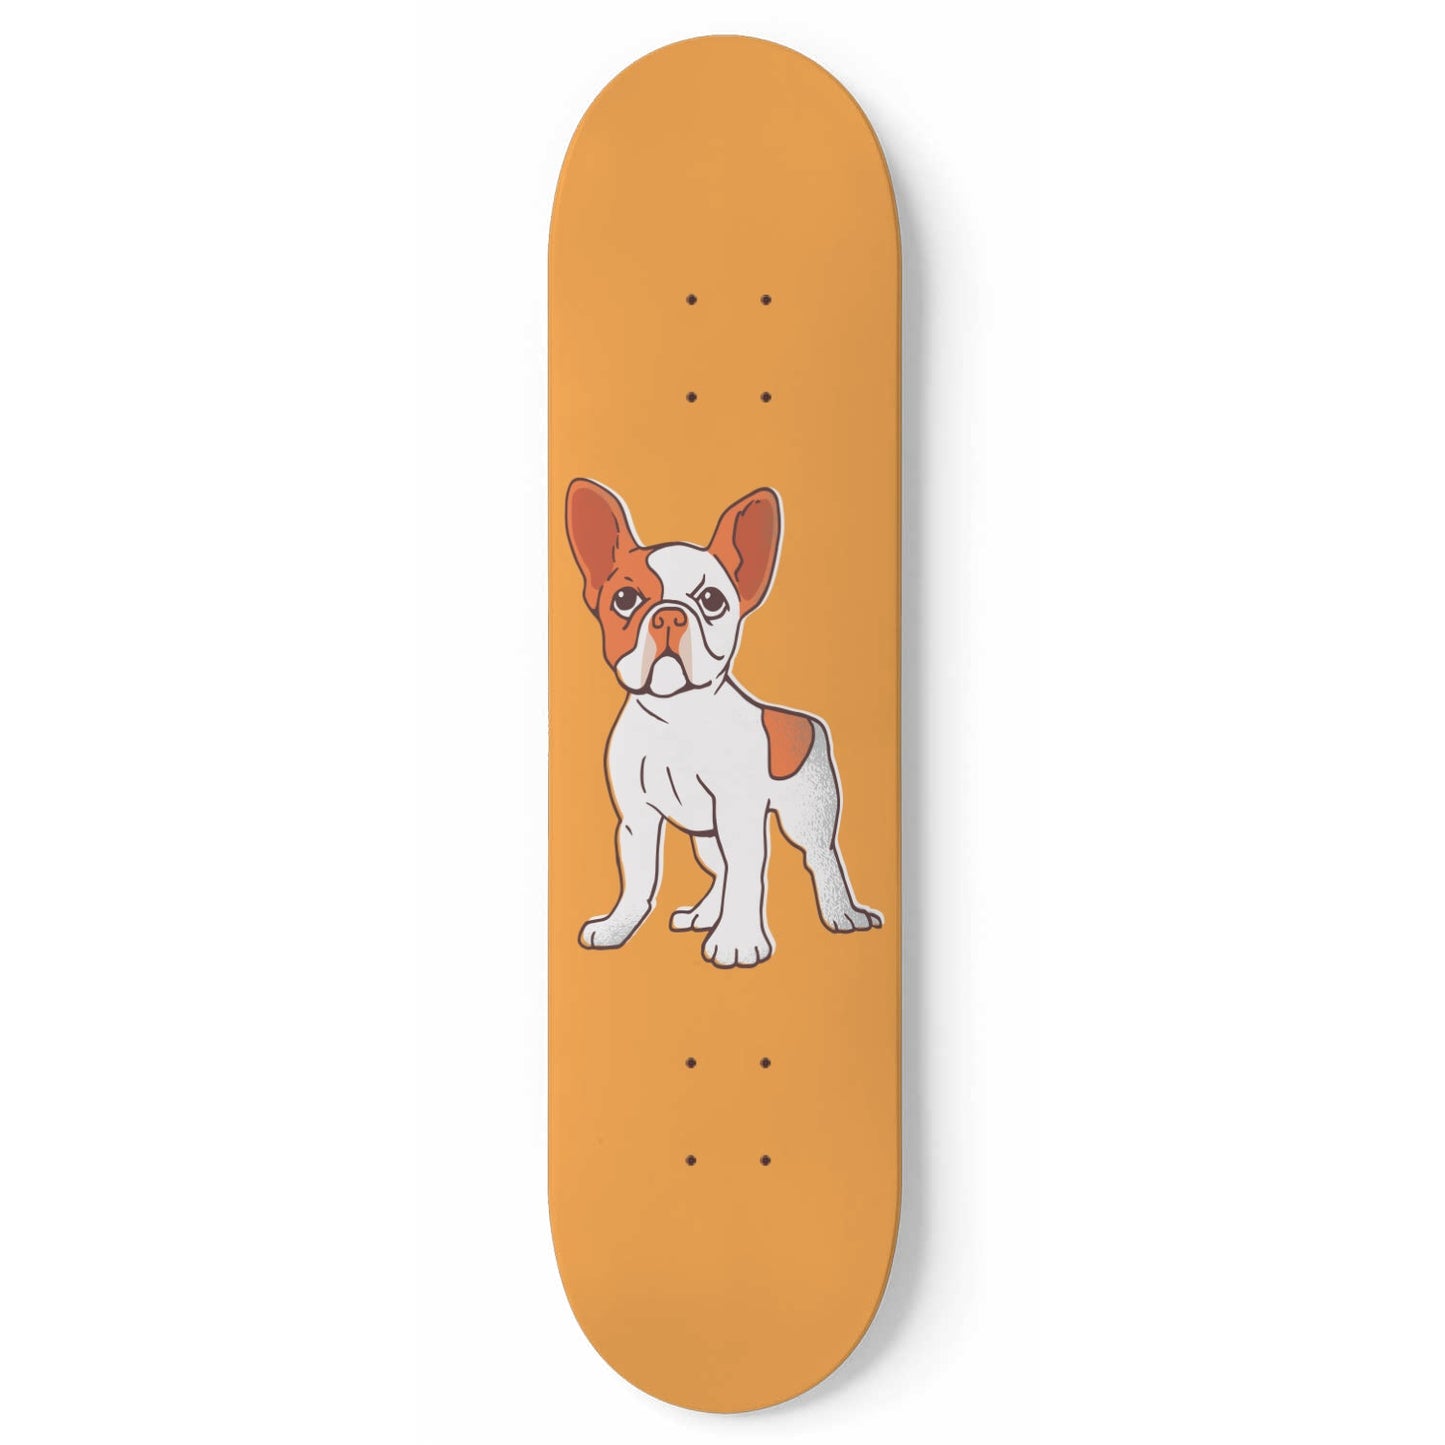 Pup Life #7.0.1 - Skater Wall